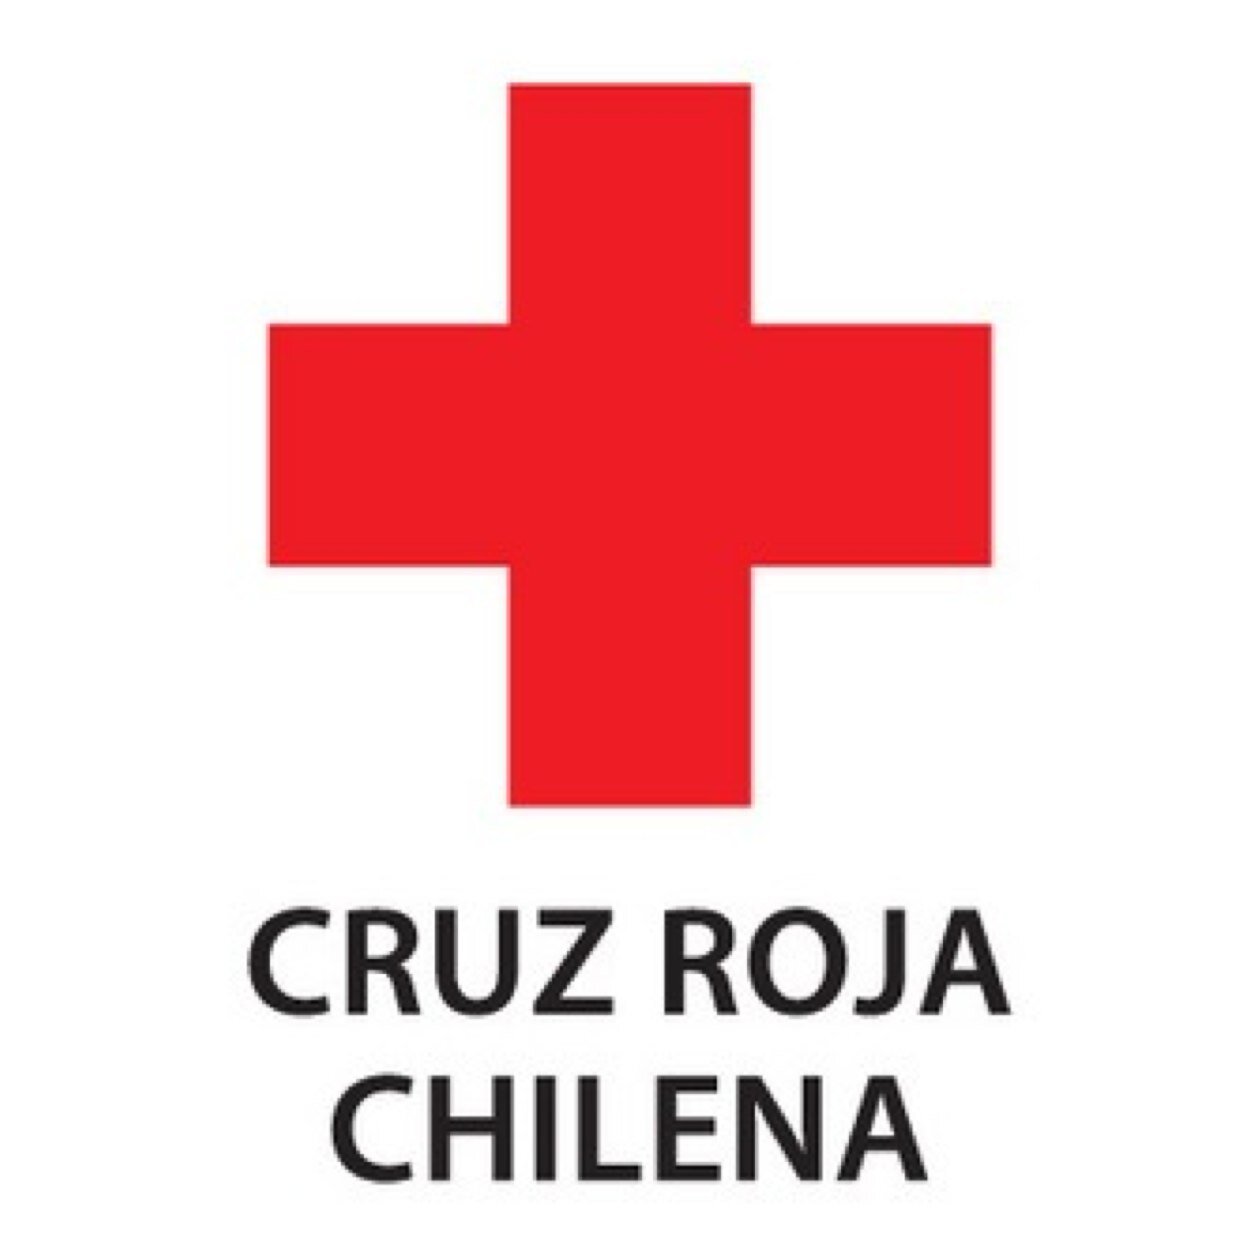 Dirección Nacional GdR; Intervención en Desastres. Informaciones emanadas desde Sala de Crisis de Cruz Roja Chilena. sigan también @cruzrojainforma